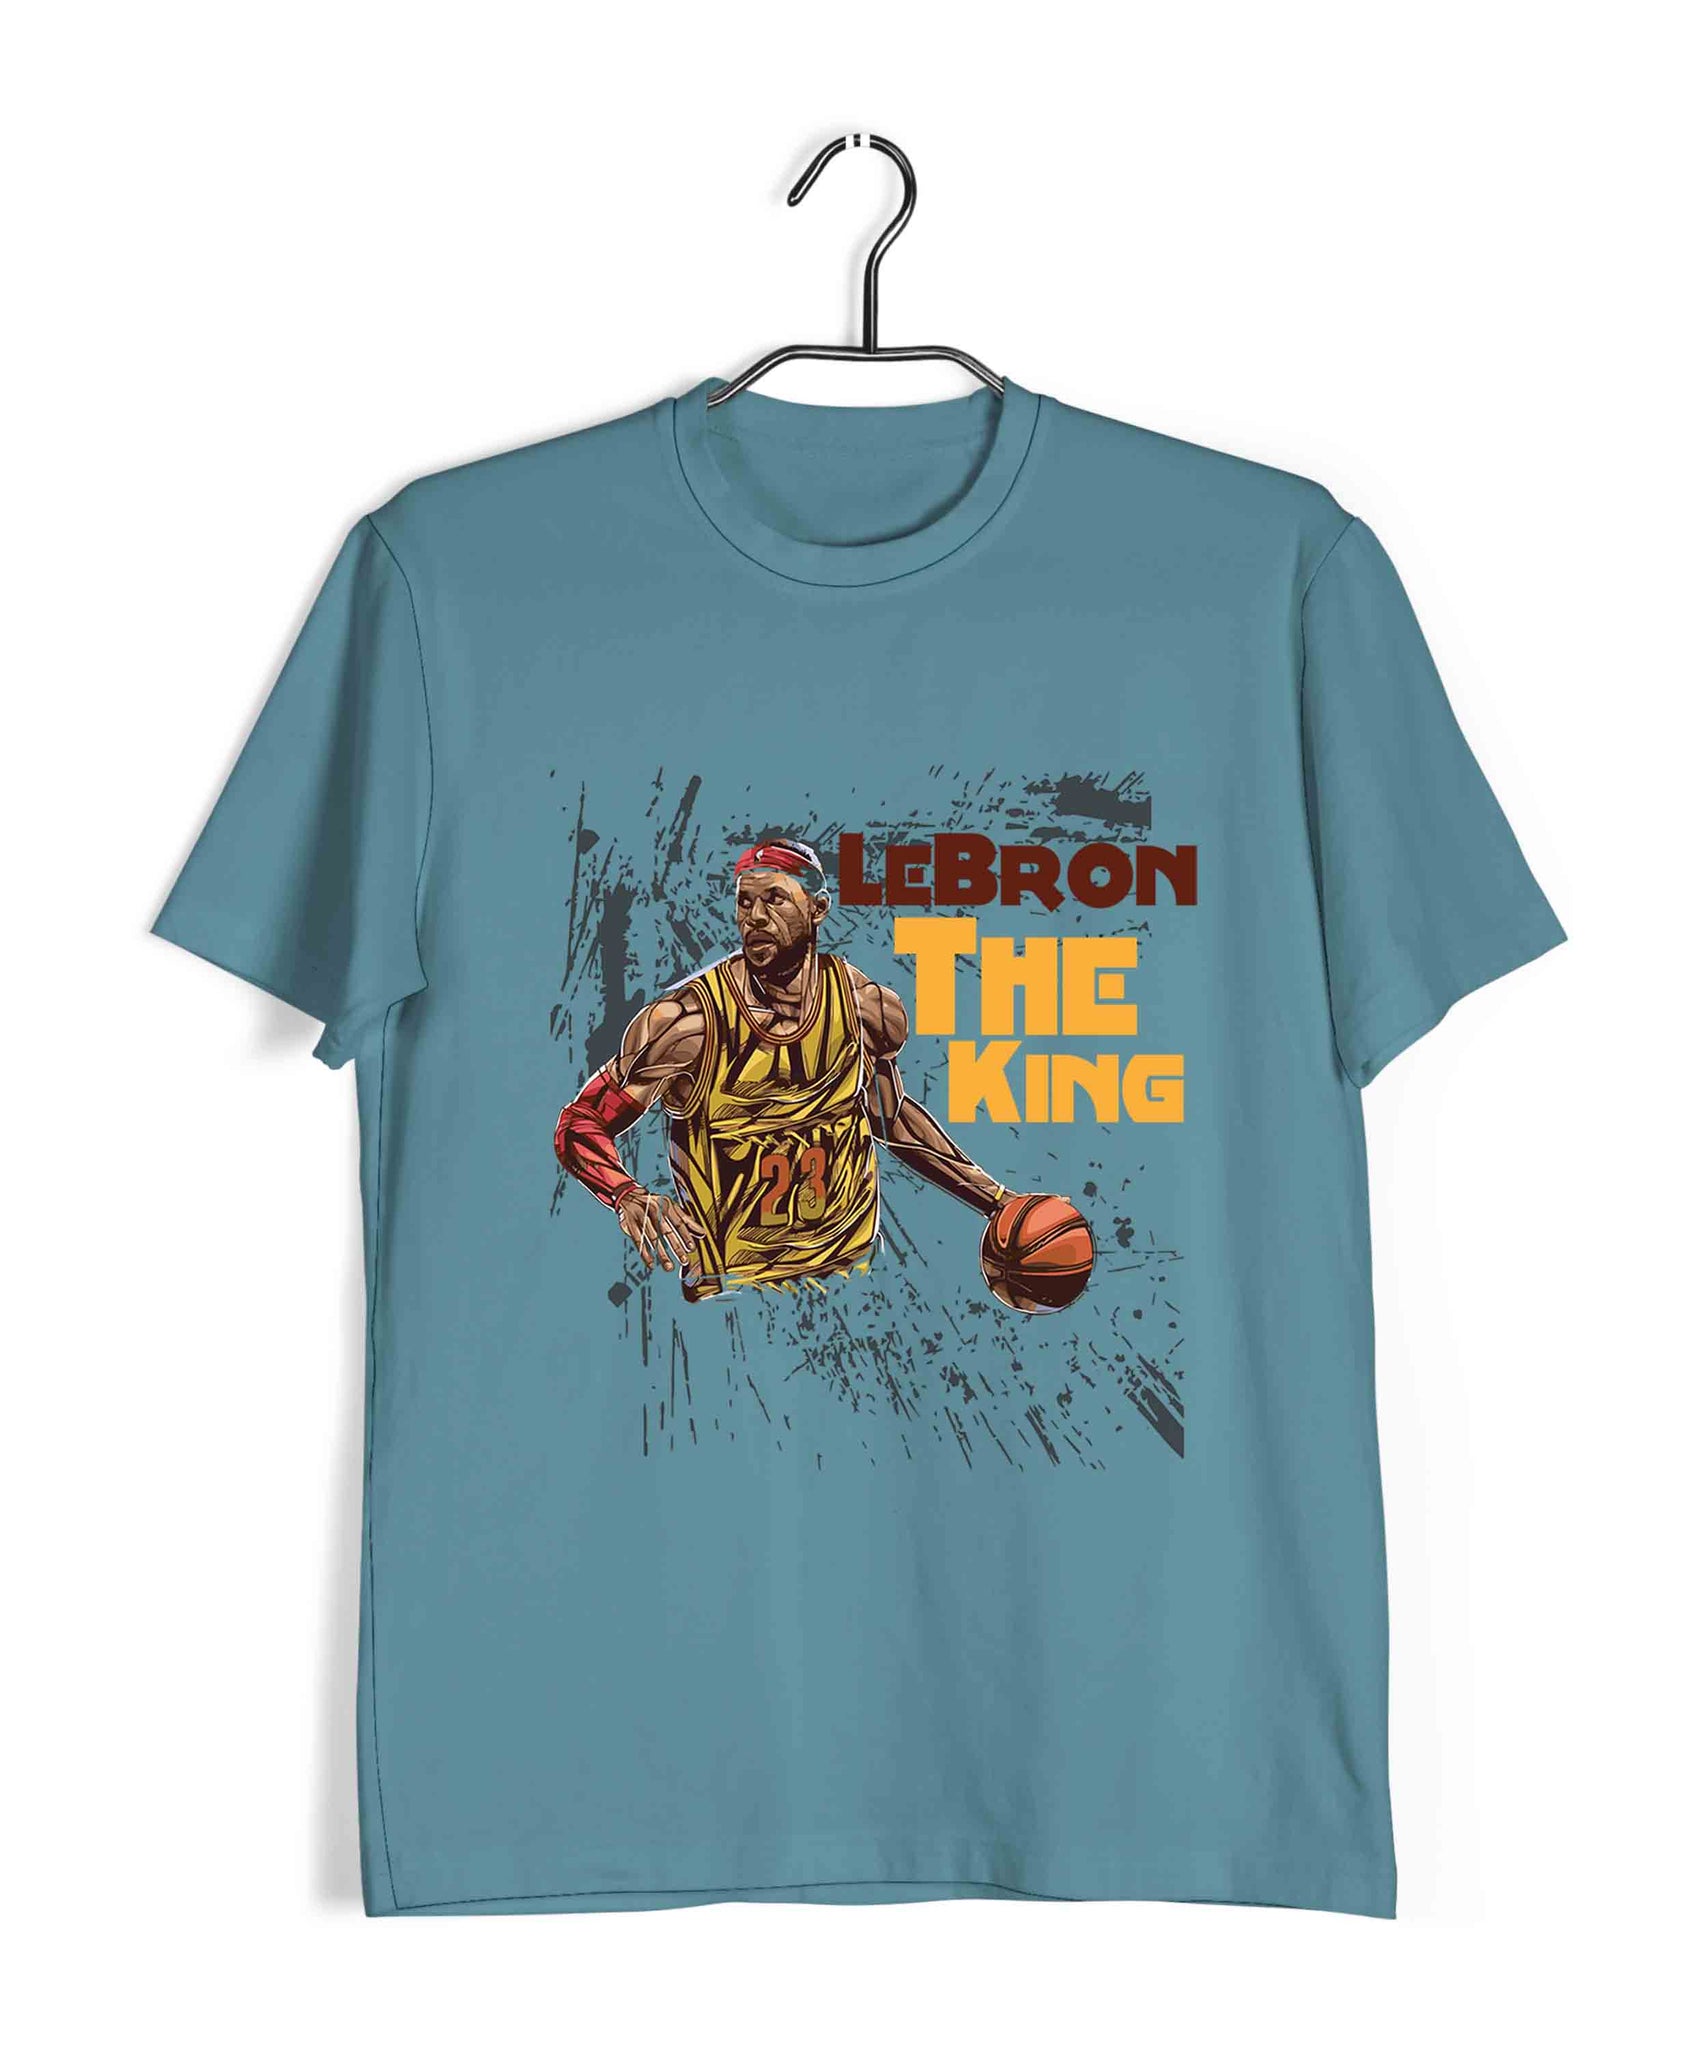 lebron james shirt design